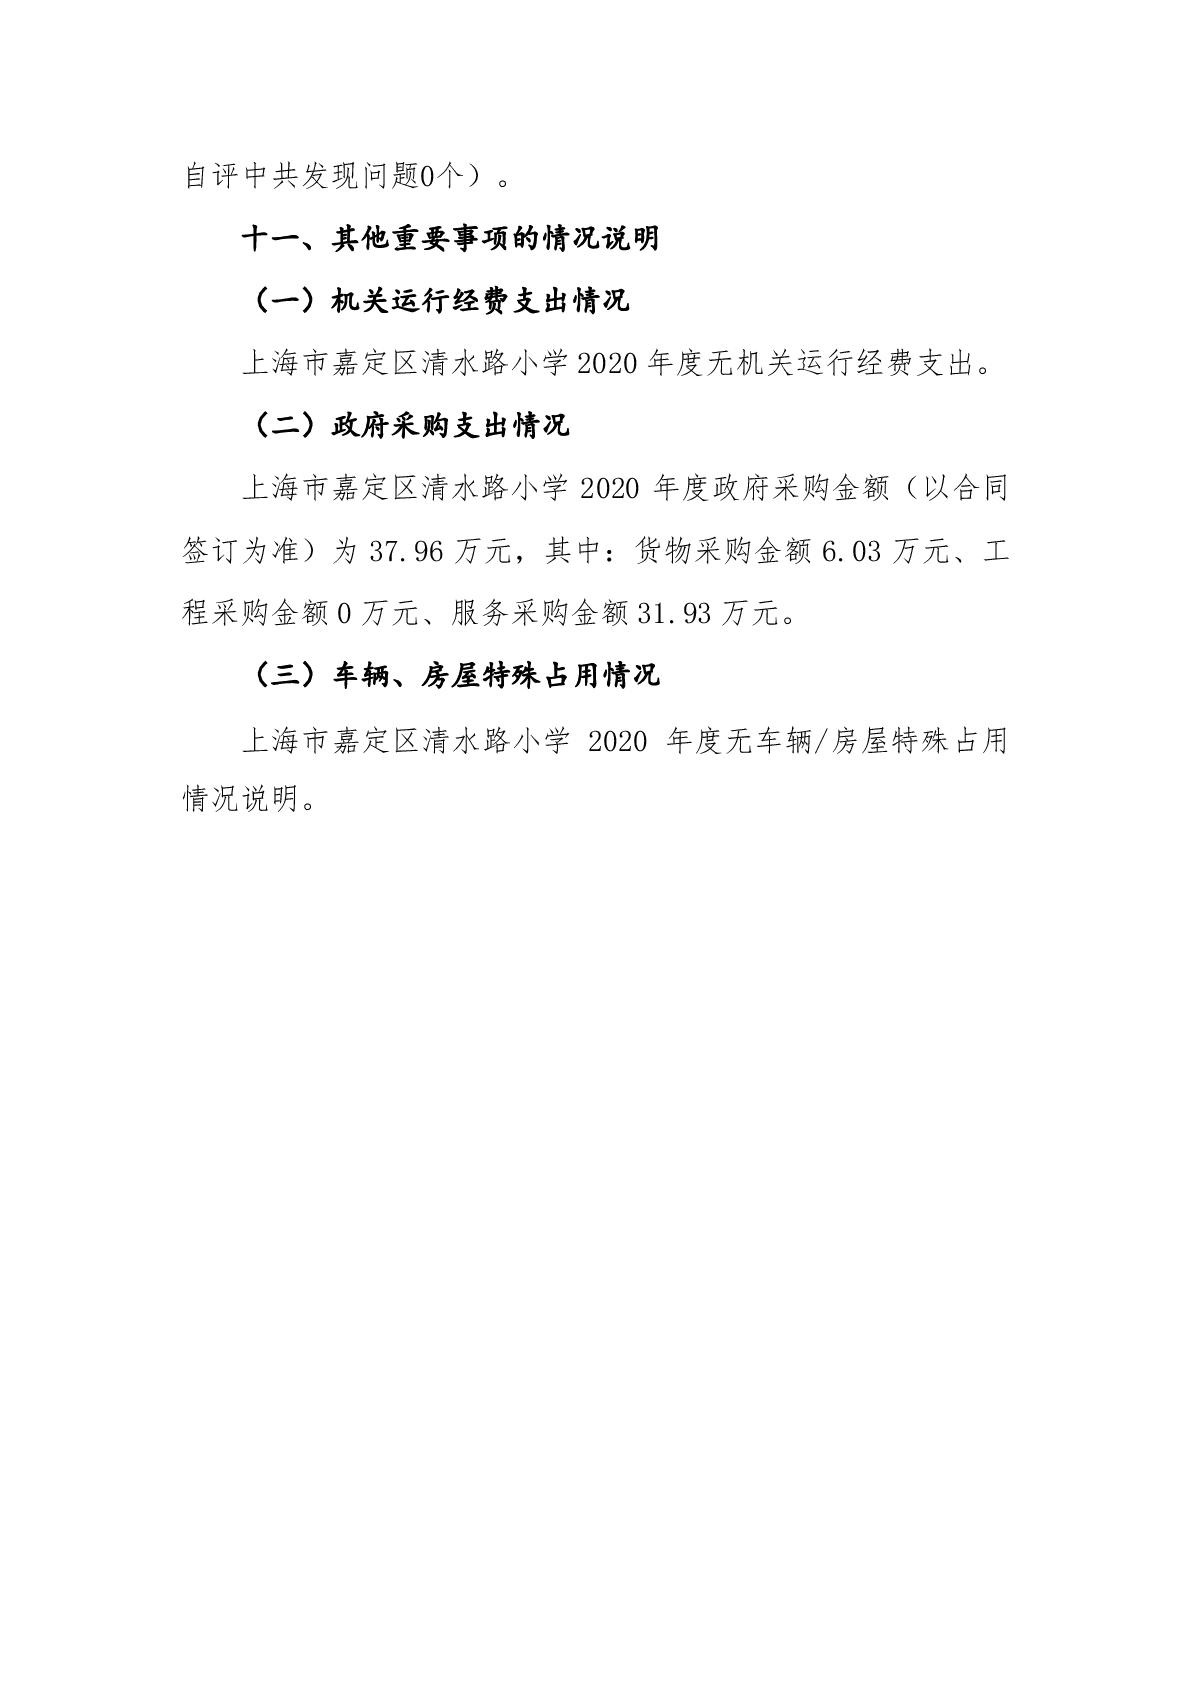 015上海市嘉定区清水路小学2020年度决算-024.jpg